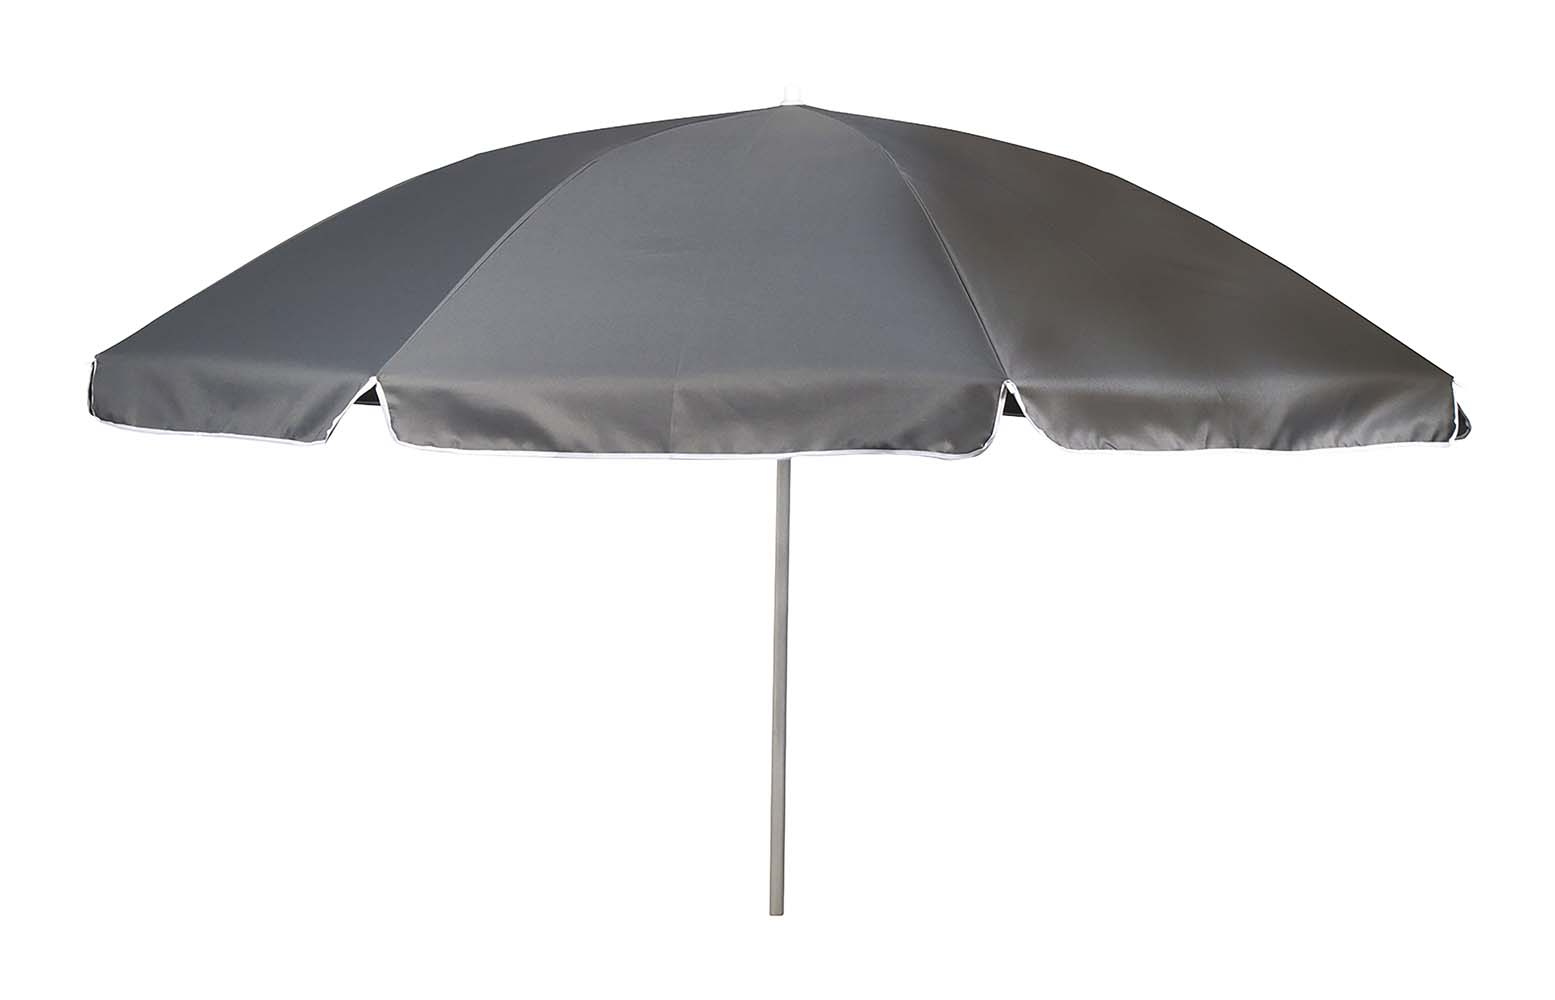 7267232 Een stijlvolle en stevige parasol met stalen frame. Het 160 gr/m² polyester doek biedt bescherming tegen schadelijke zonnestraling. De steel is deelbaar, in hoogte verstelbaar en voorzien van een knikarm zodat het doek richting de zon kan worden gebogen. Gemakkelijk mee te nemen (Ø15x100 cm). De steel van de parasol heeft een diameter van 32 millimeter.